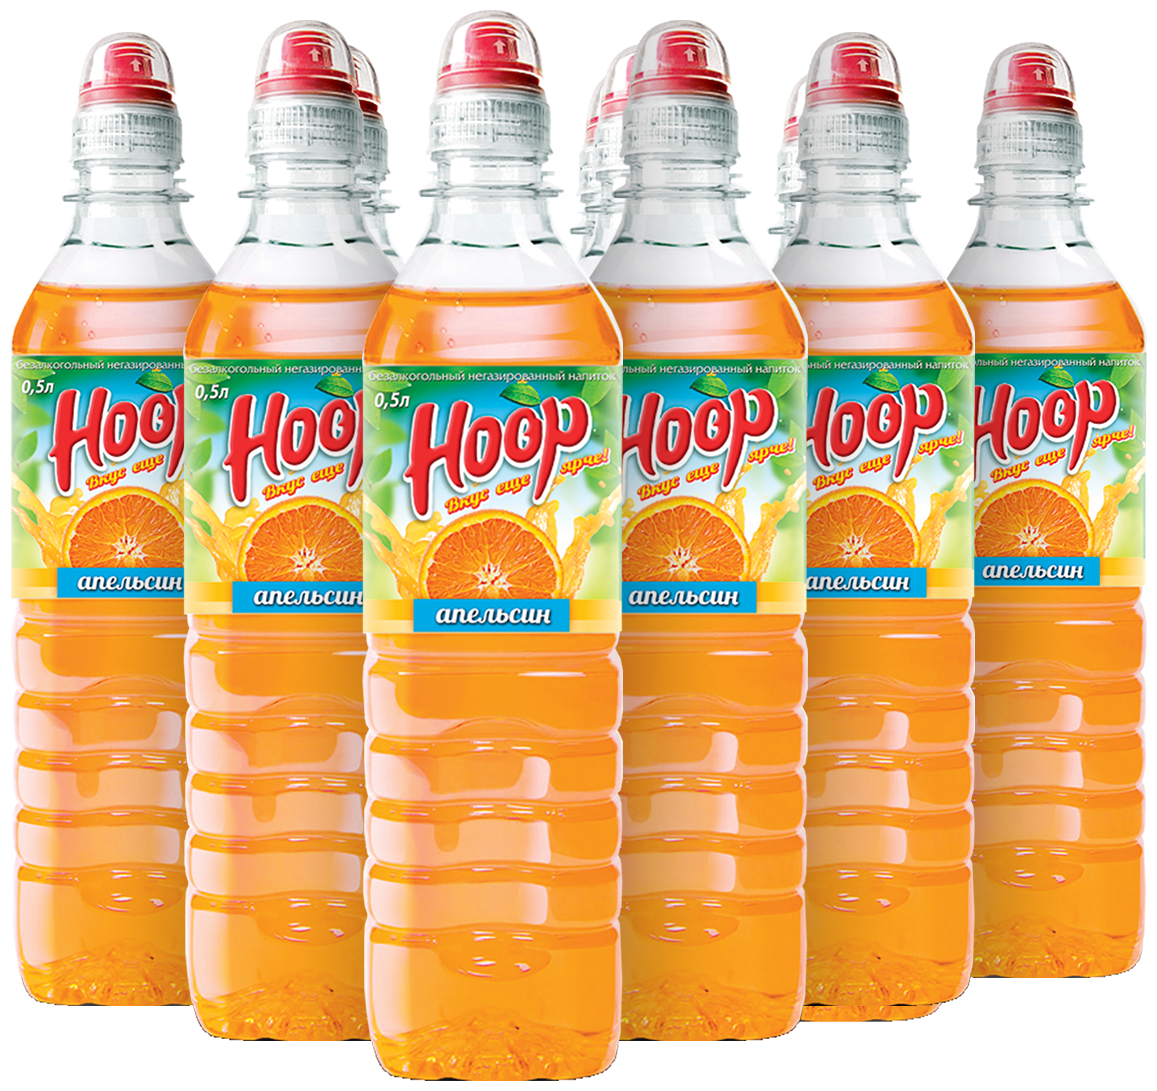 Hoop апельсиновый вкус низкокалорийный негазированный напиток 05л х 12 шт.